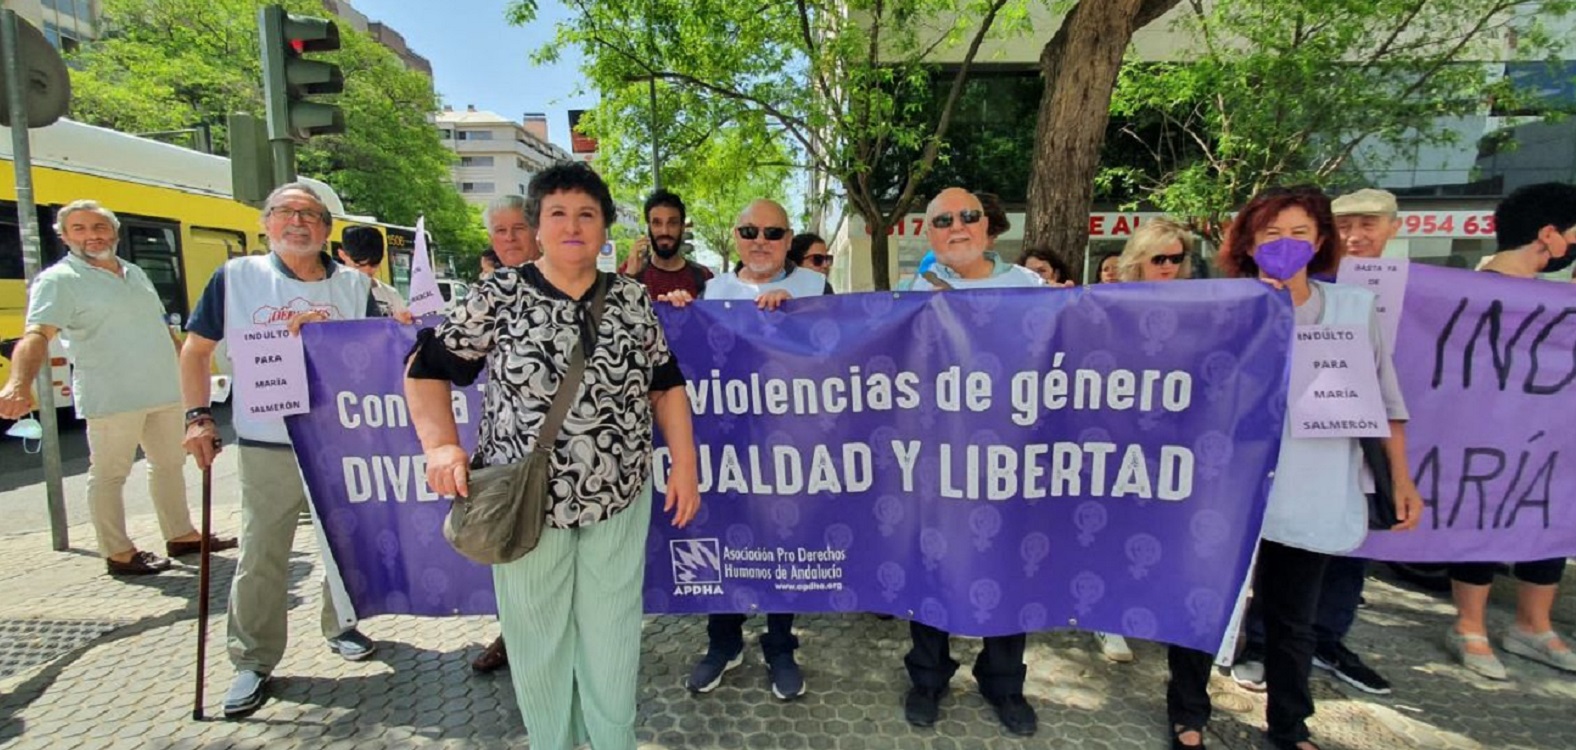 María Salmerón, junto a un grupo de simpatizantes, a su llegada a los juzgados de Sevilla. Fuente: EP.